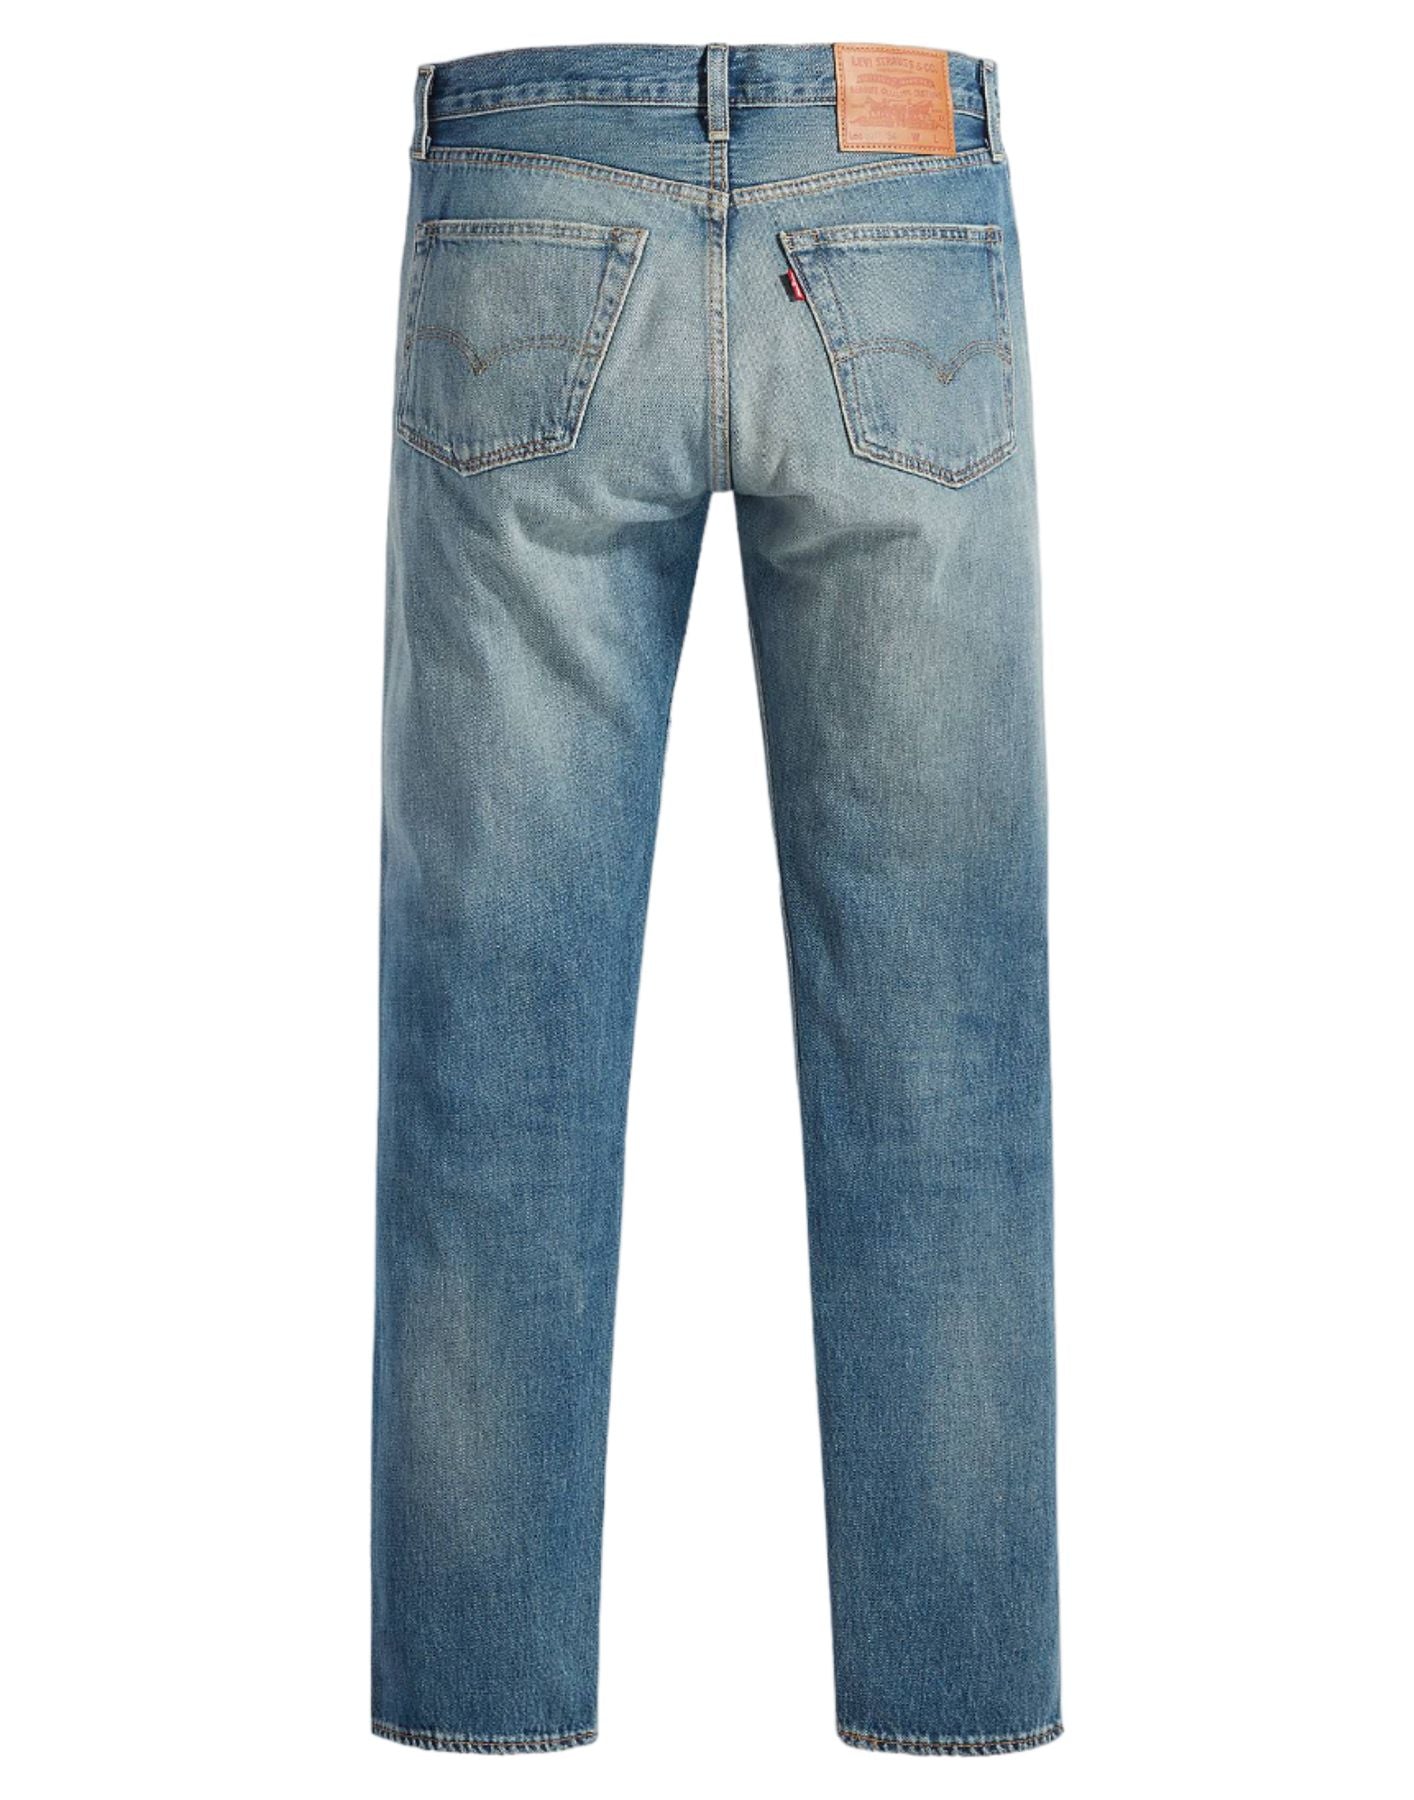 Jeans für Mann A46770014 Misty Lake Levi's